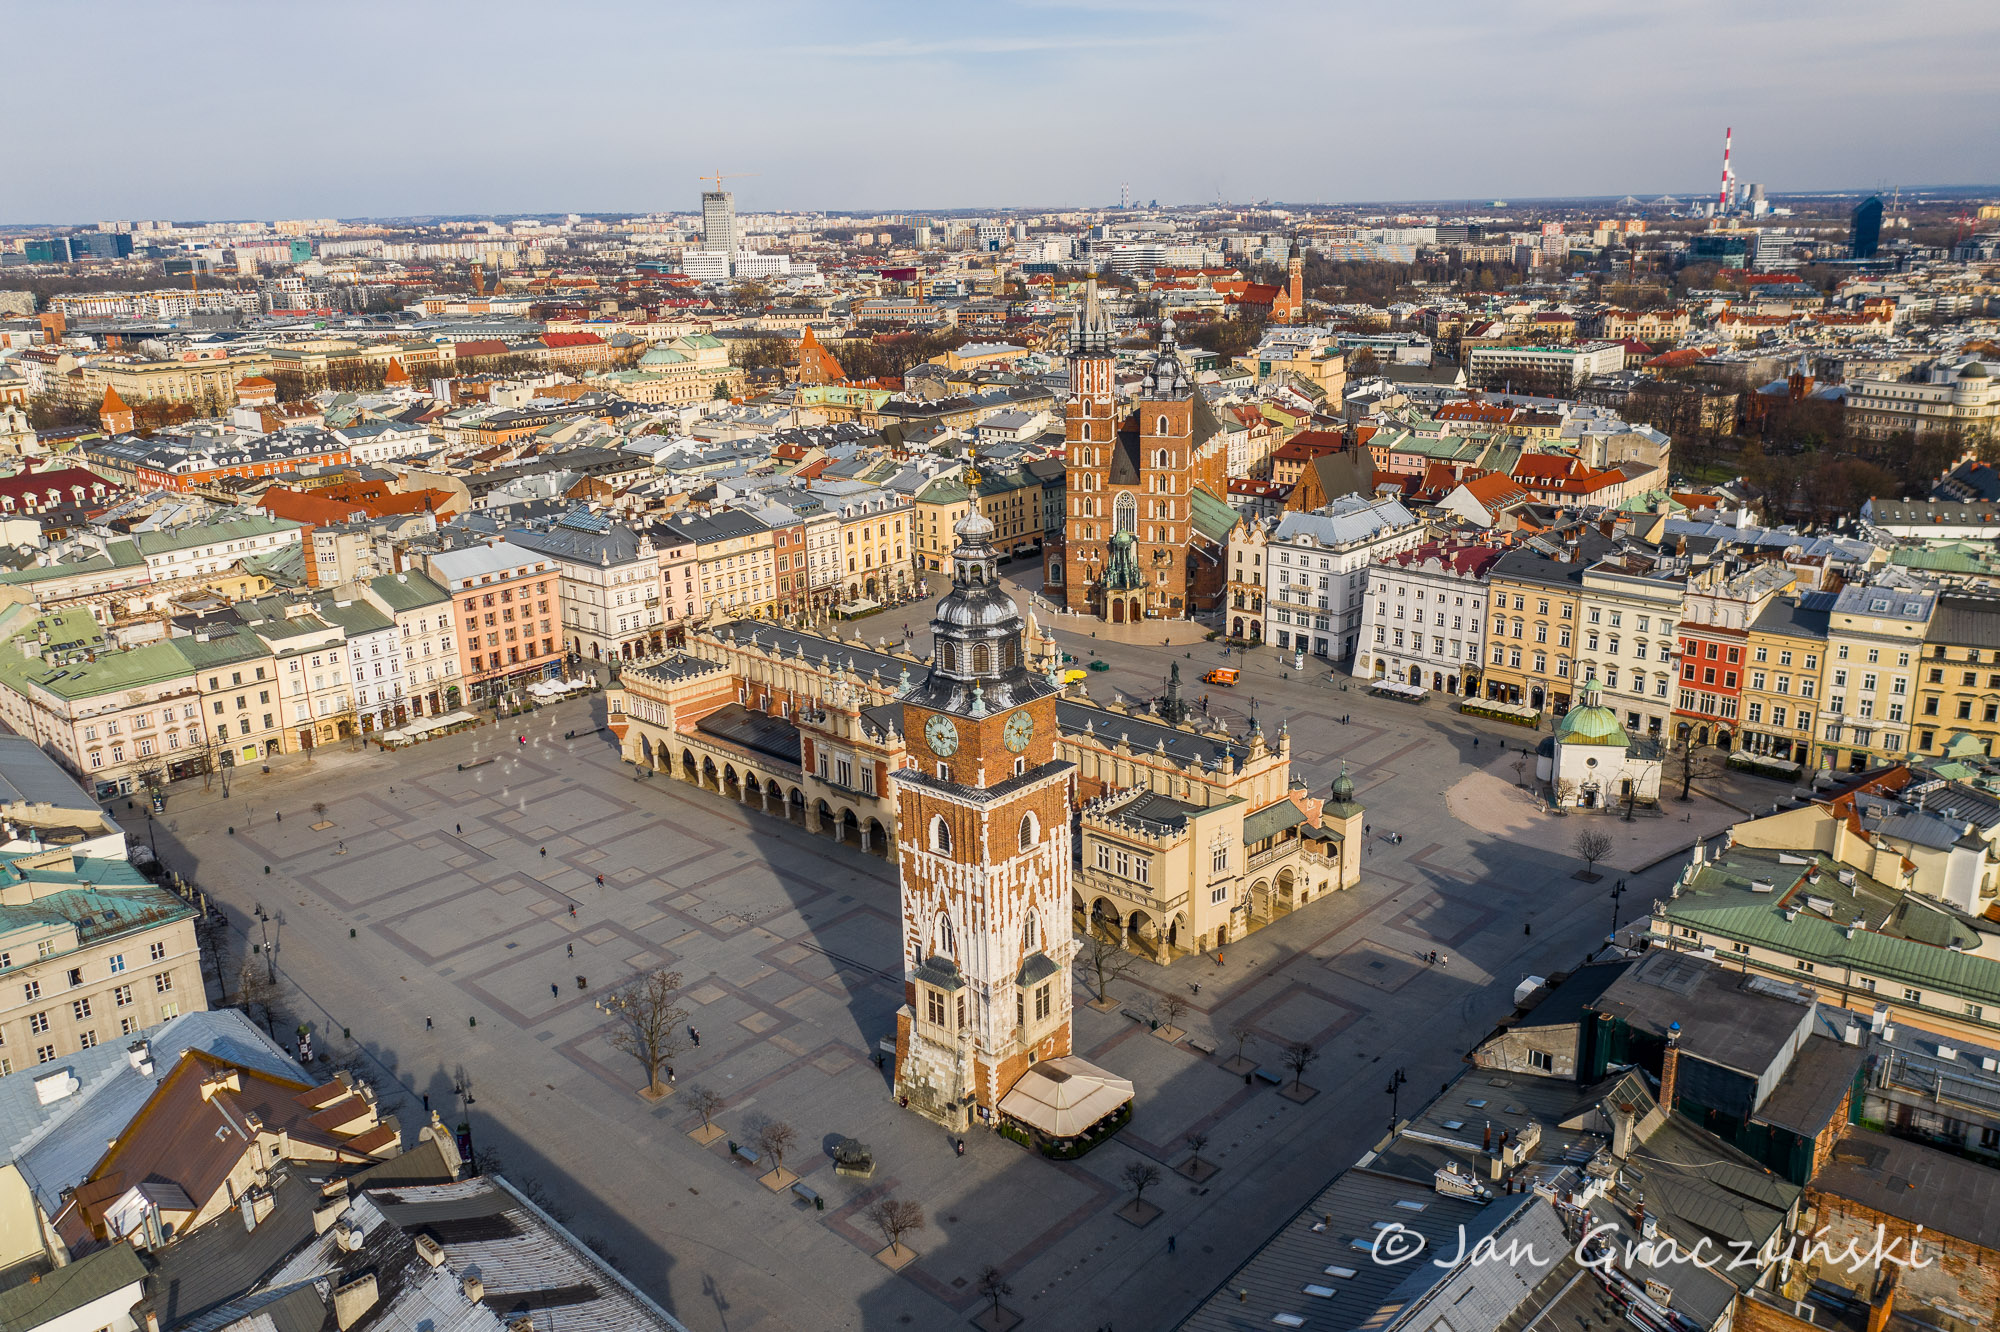 Main Square in Kraków